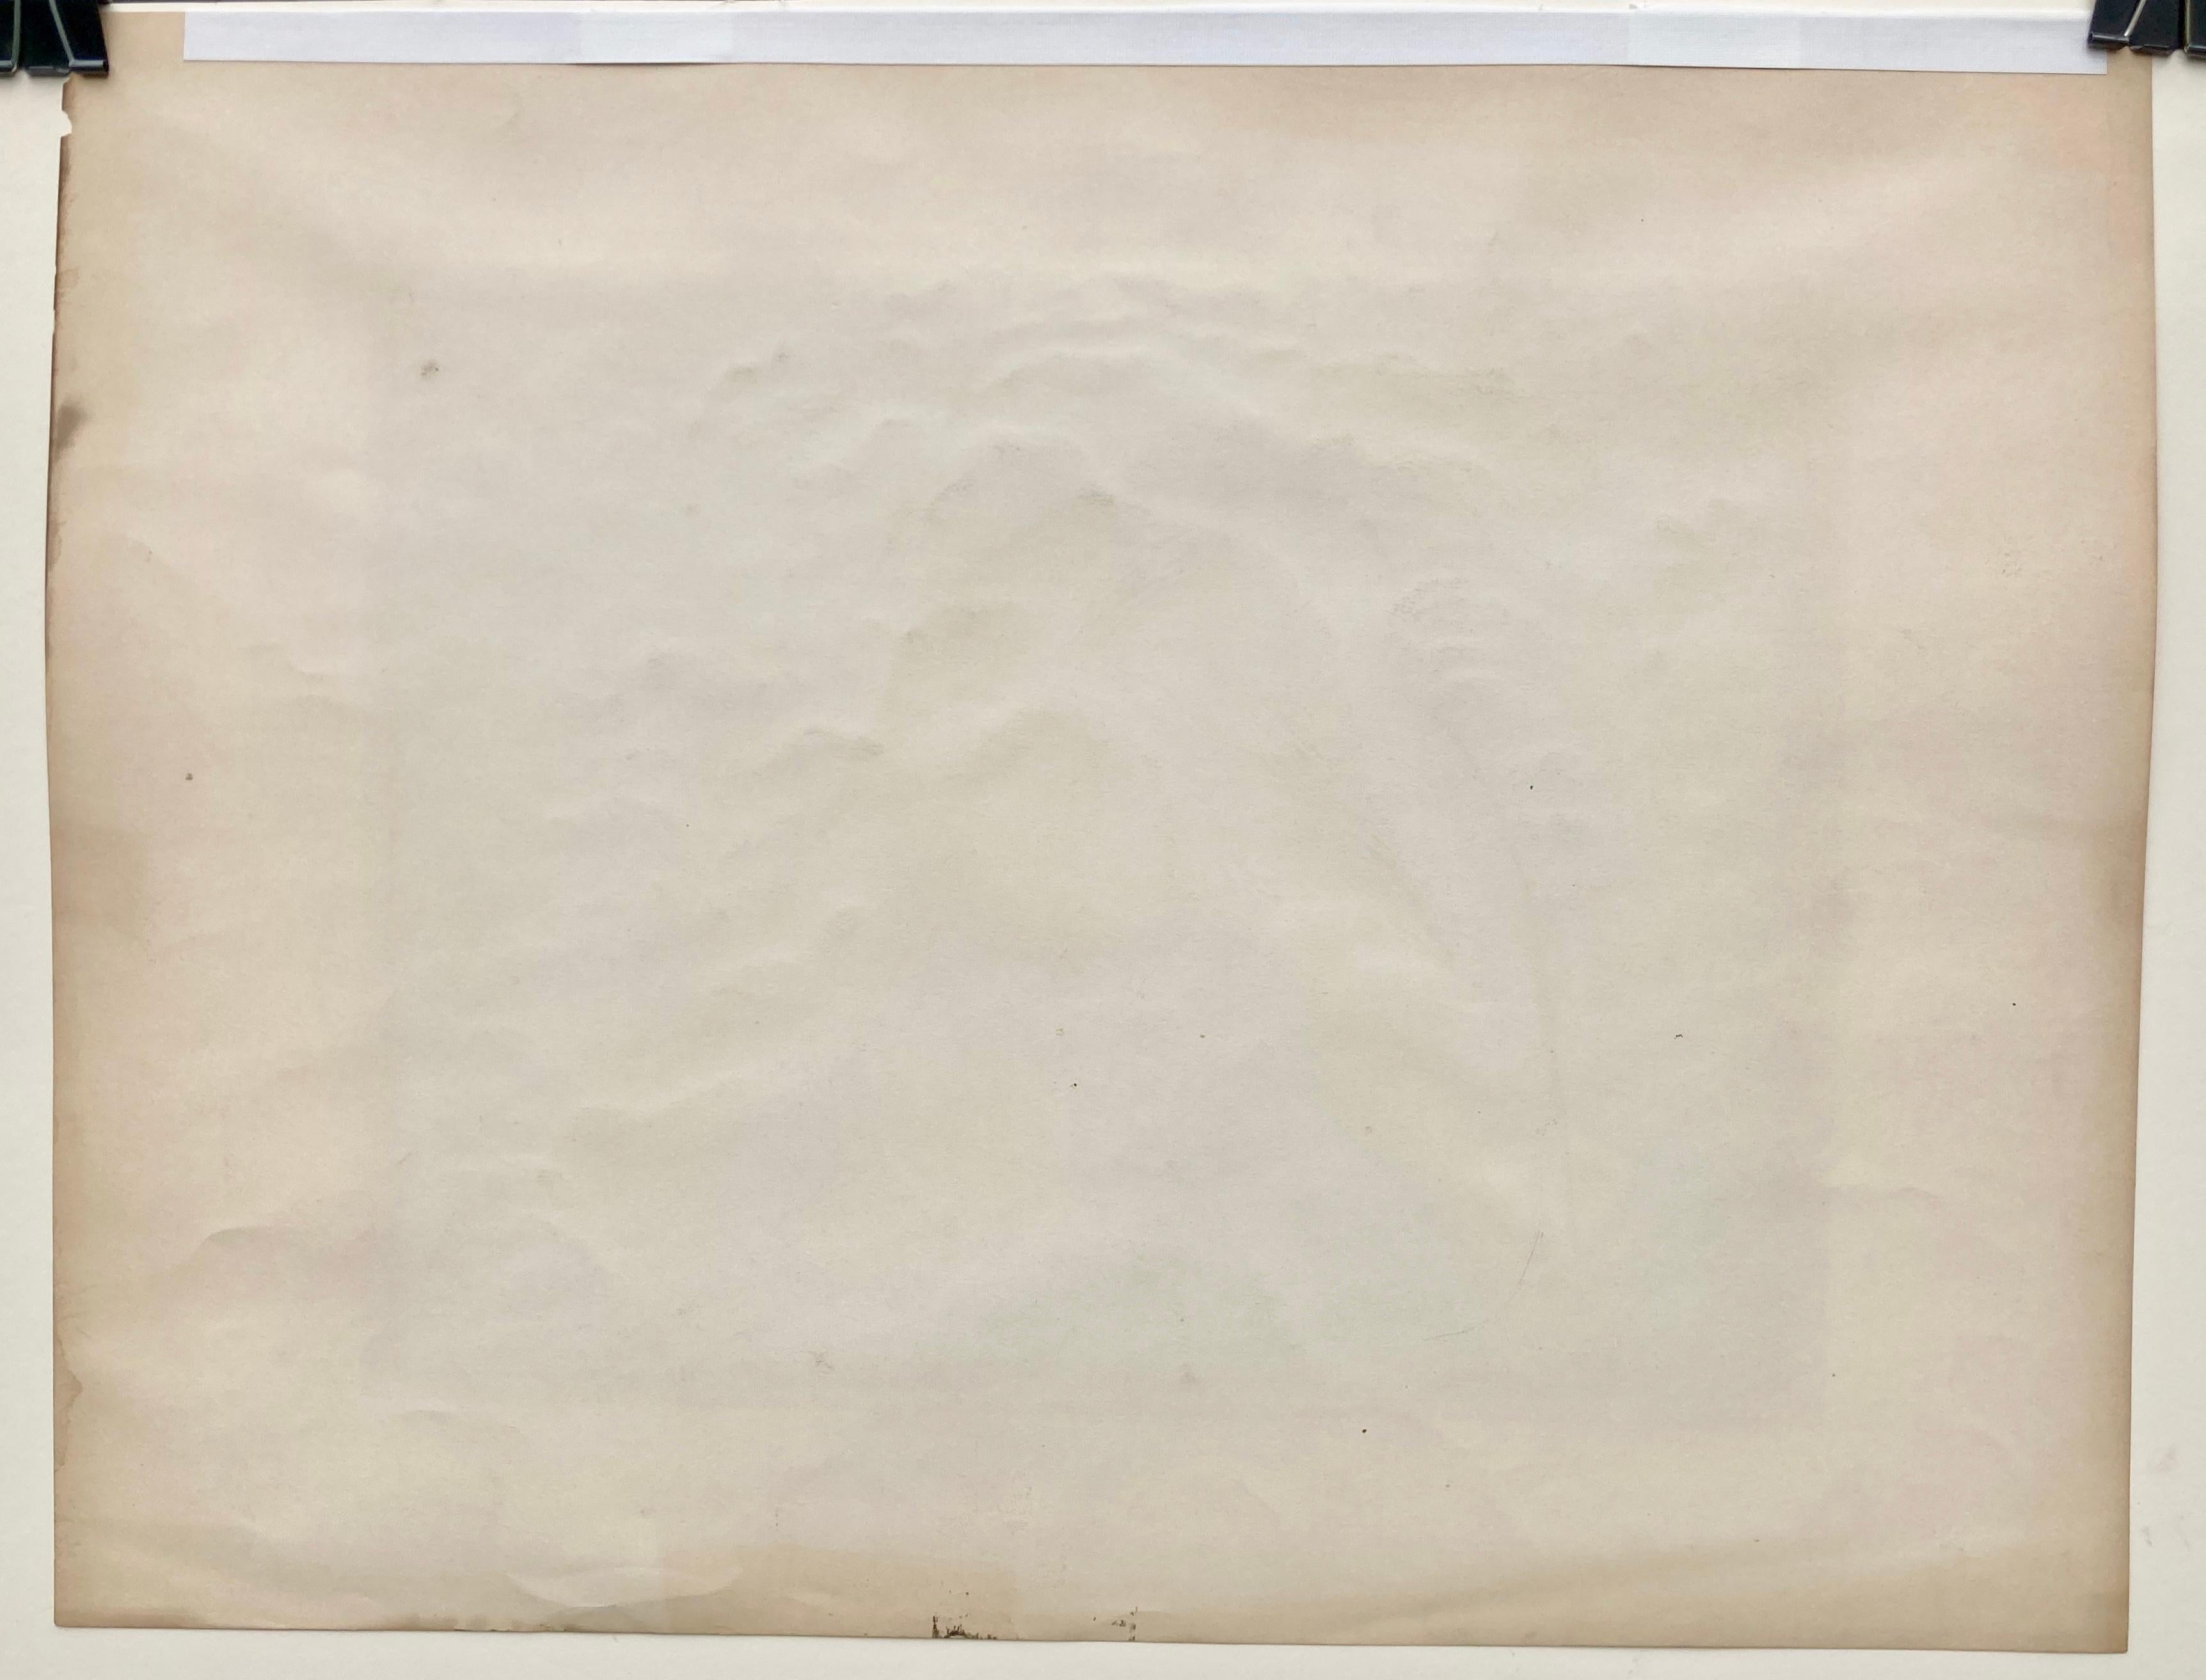 BERNARD (JOSEPH) STEFFEN (1907 - 1980)

PULLING CORN (FODDER HOPPER) c. 1935-45
Sérigraphie en couleur signée avec une signature complète sous l'image au bord inférieur droit de la feuille. Édition inconnue, mais très rare. 11 x 13 7/8 pouces,